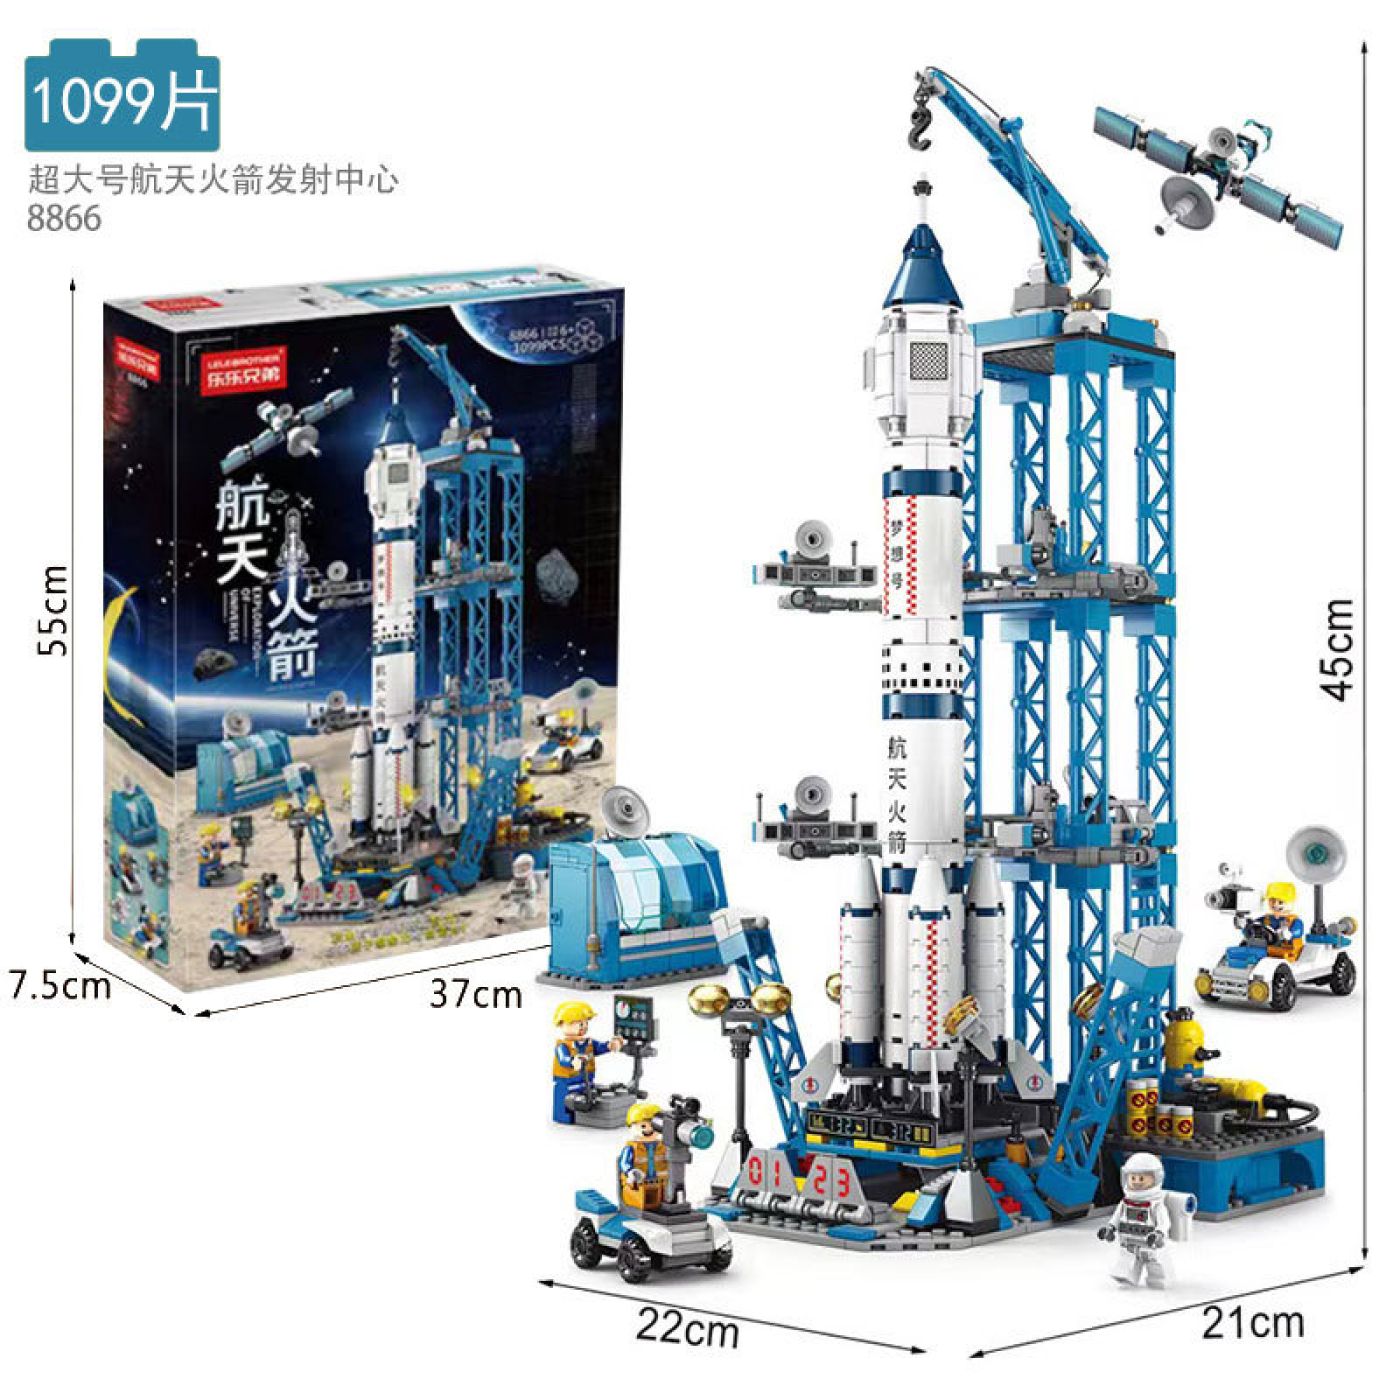 Bộ đồ chơi LEGO Lắp ghép Tàu vũ trụ 1093 chi tiết full hộp giấy có quai xách mã 8866